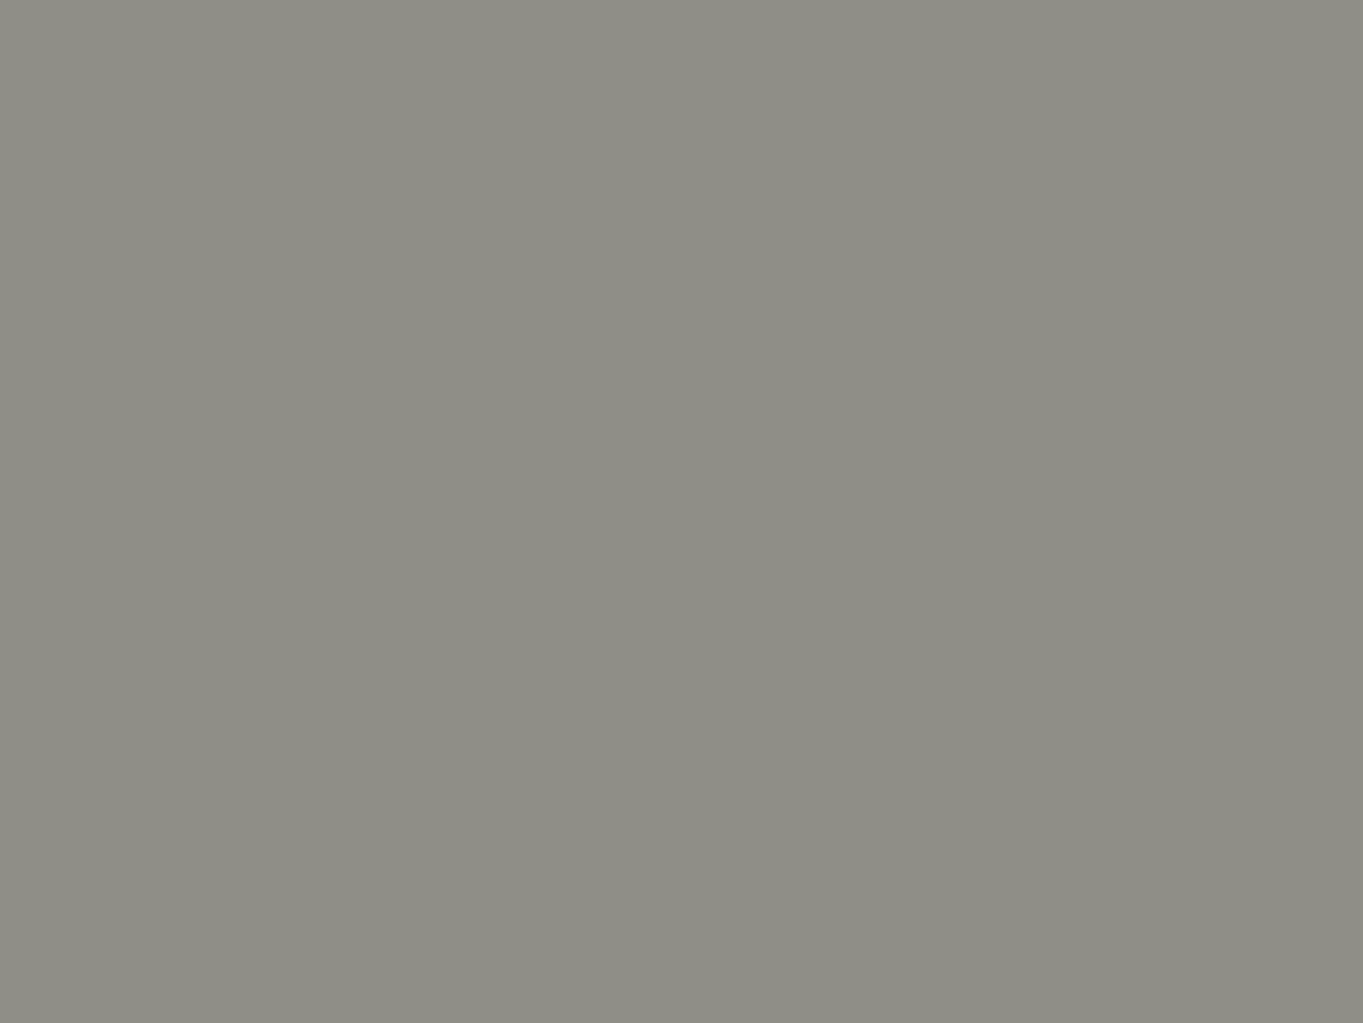 Столовый сервиз с зеленой лягушкой. Миска с крышкой с видами Трентам-Холл и парка в Третаме, Стаффордшир на корпусе и видами замка Хэдлей, Эссекс и залива острова Треско, Корнуолл. Фотография: екатерина2.рф